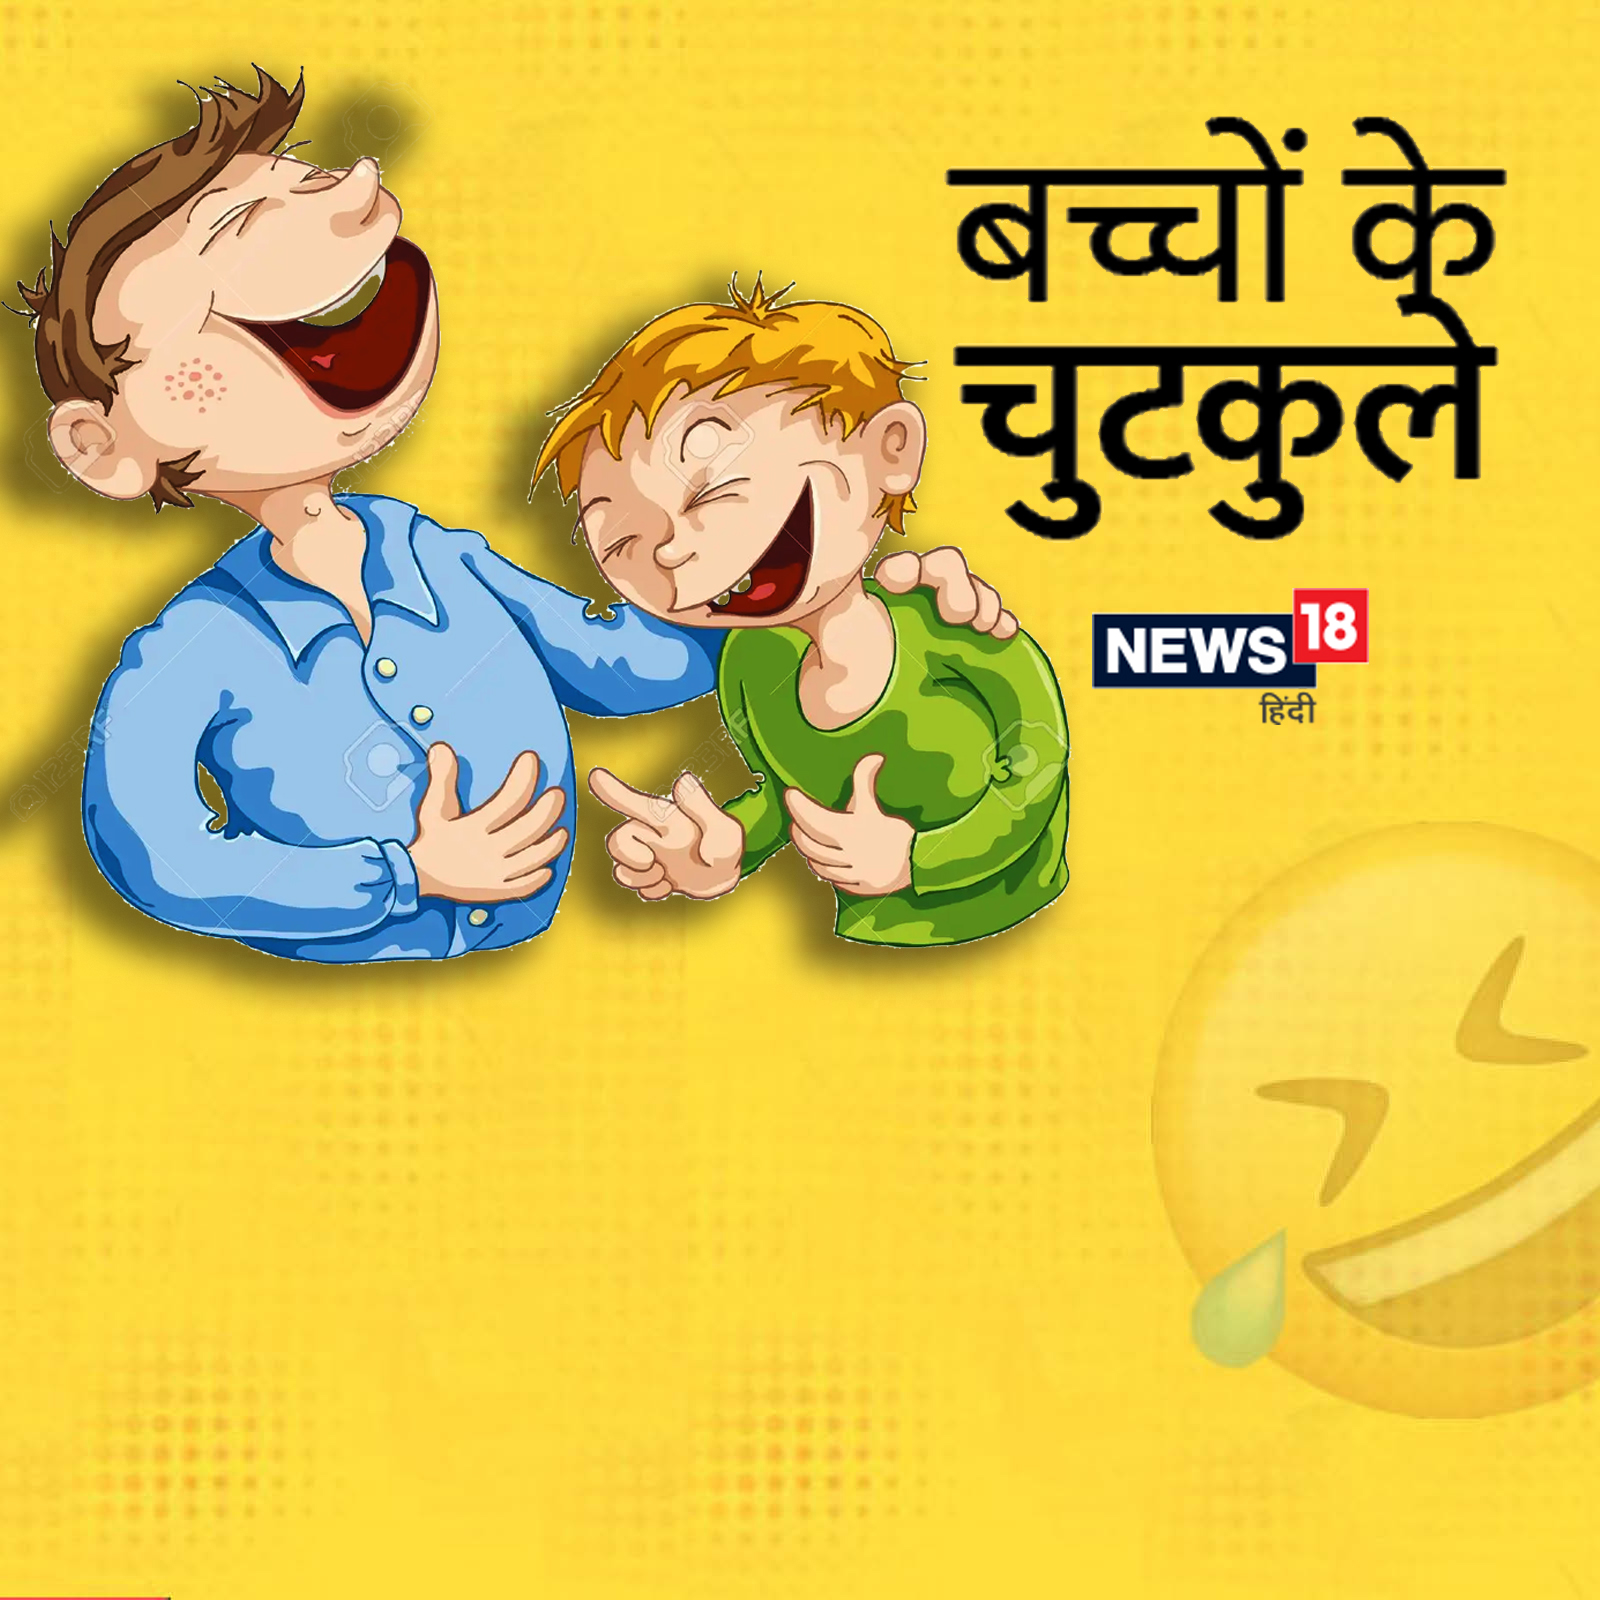 Funny kids jokes in hindi bacchon ke chutkule - Funny Kids Jokes: टीचर के  सवाल पूछने पर बच्चे ने सुनाया 'बचपन का प्यार' गाना, पढ़ें शरारती बच्चों के  चुटकुले – News18 हिंदी